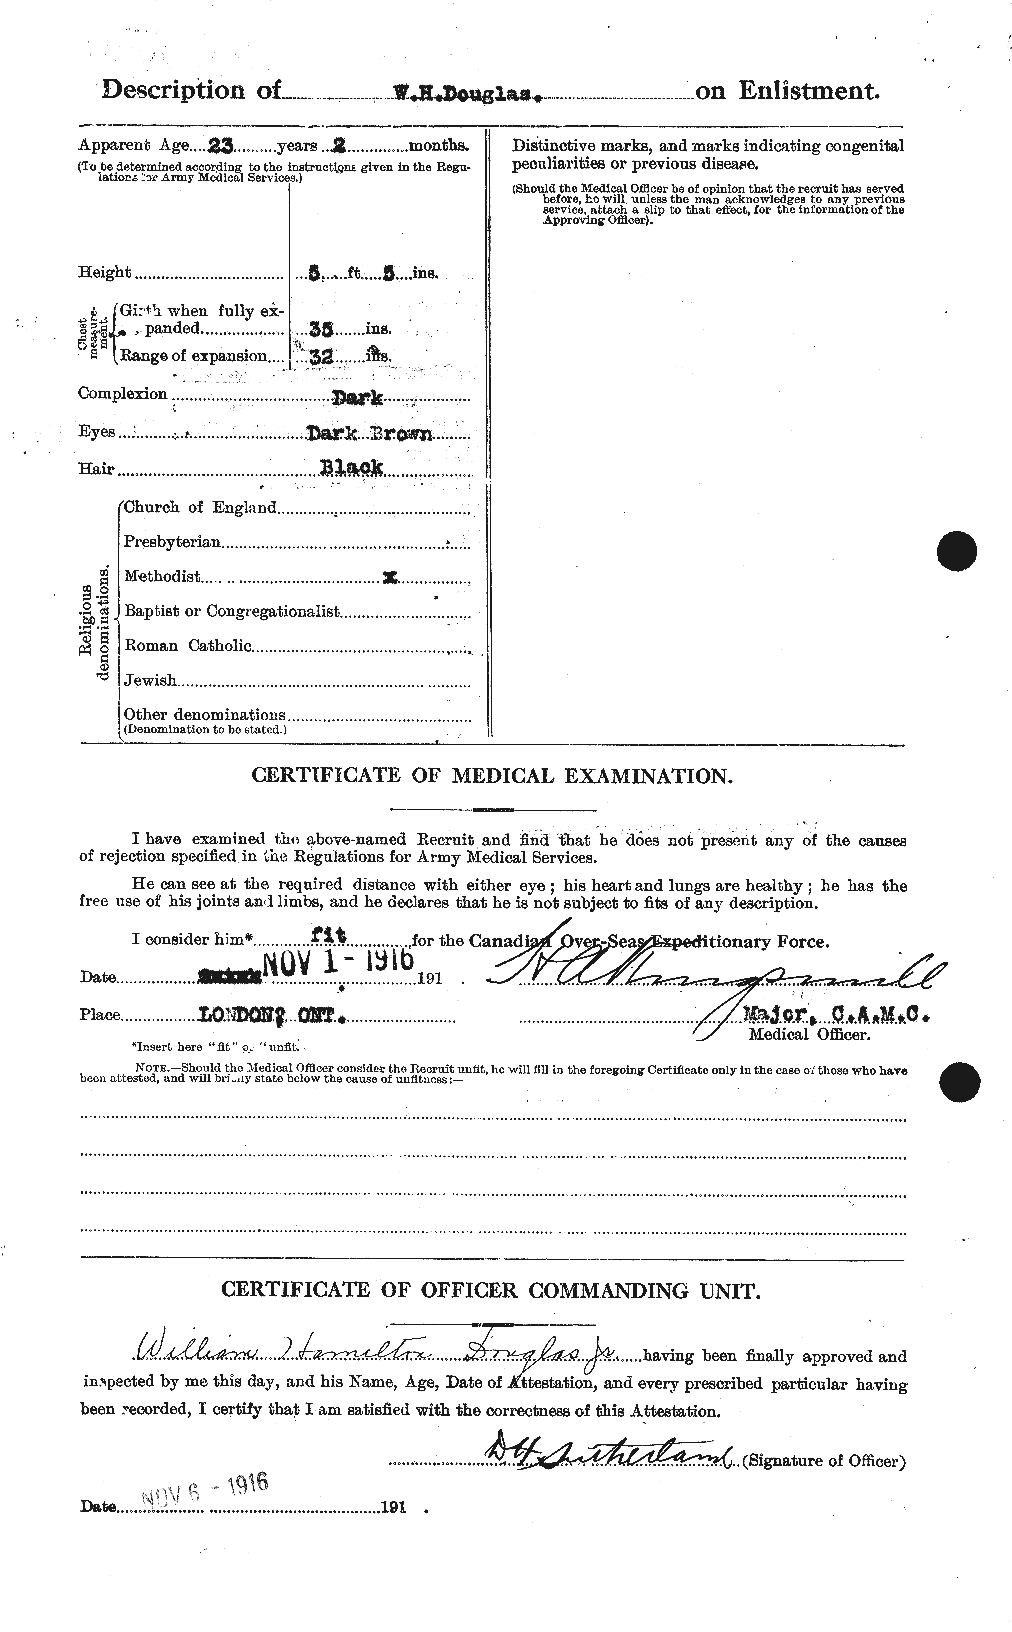 Dossiers du Personnel de la Première Guerre mondiale - CEC 295338b